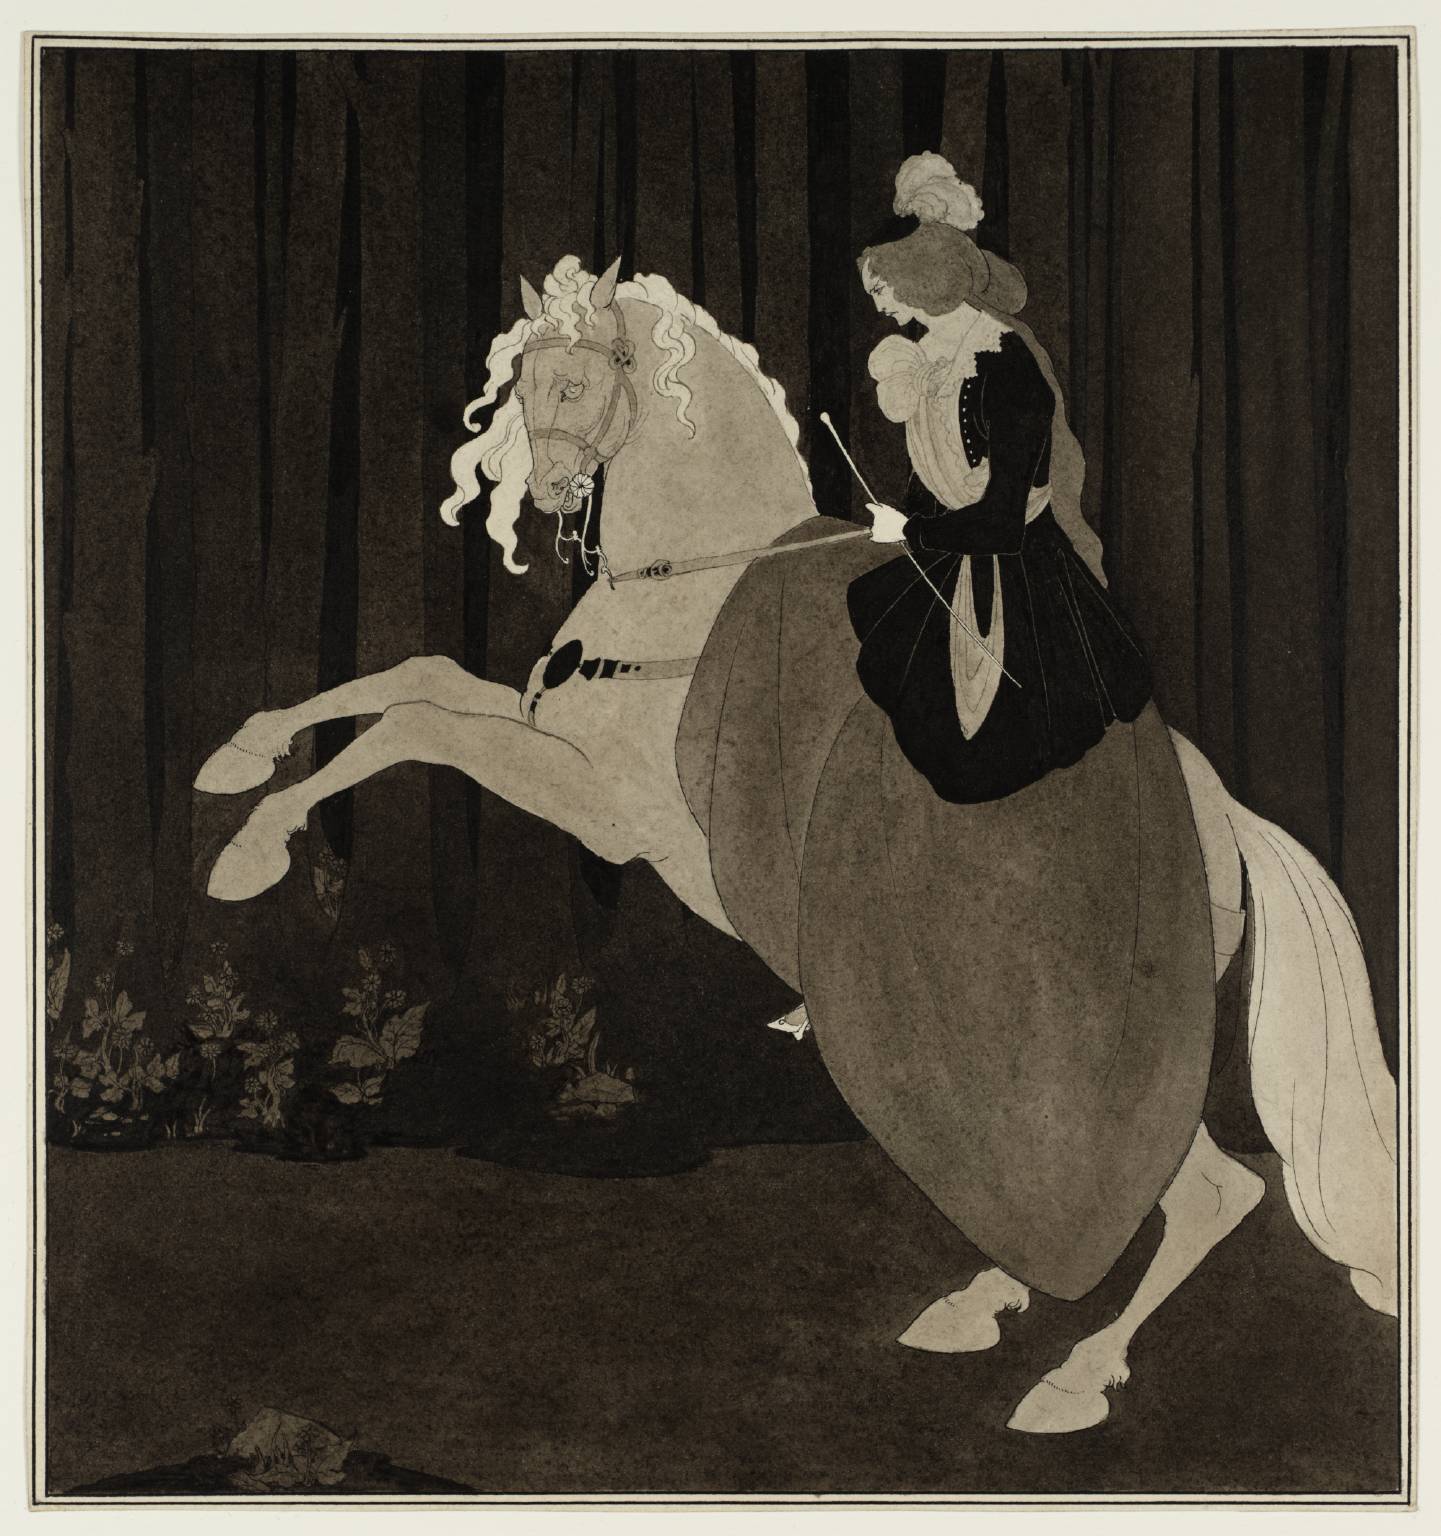 ショパンのバラード第3番の口絵 by Aubrey Beardsley - 1895年 - 260 x 246 mm 